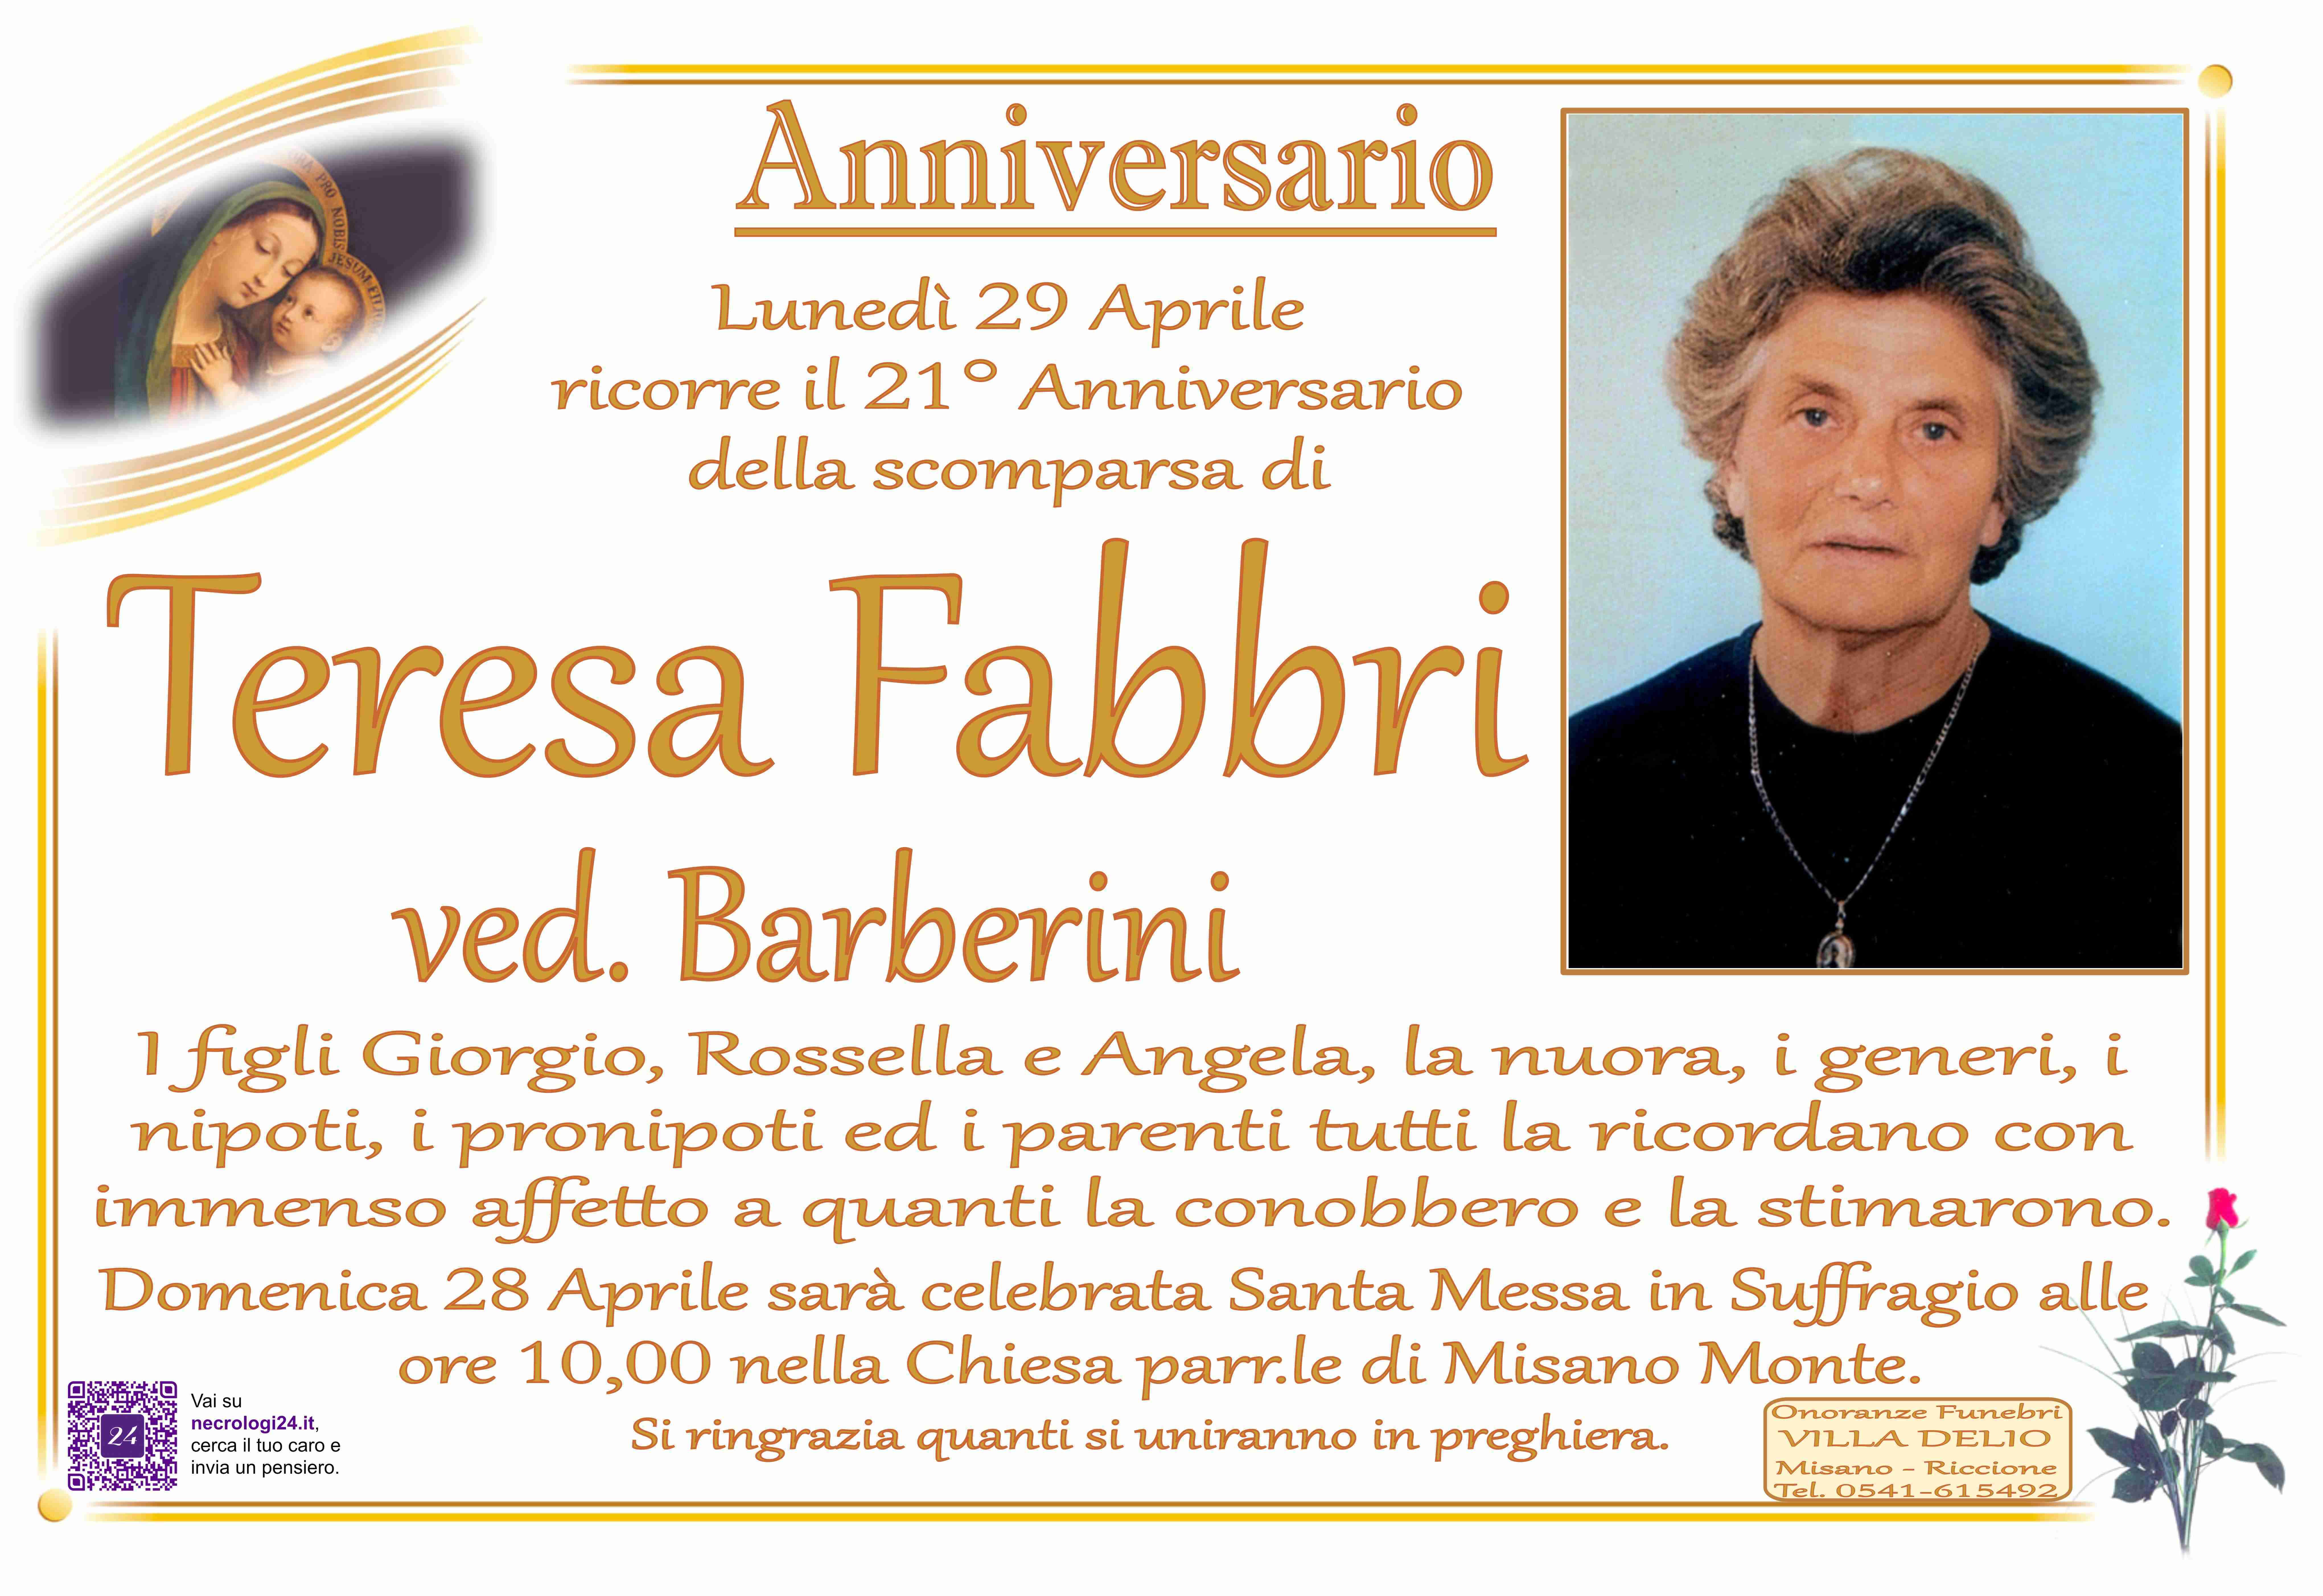 Teresa Fabbri ved. Barberini